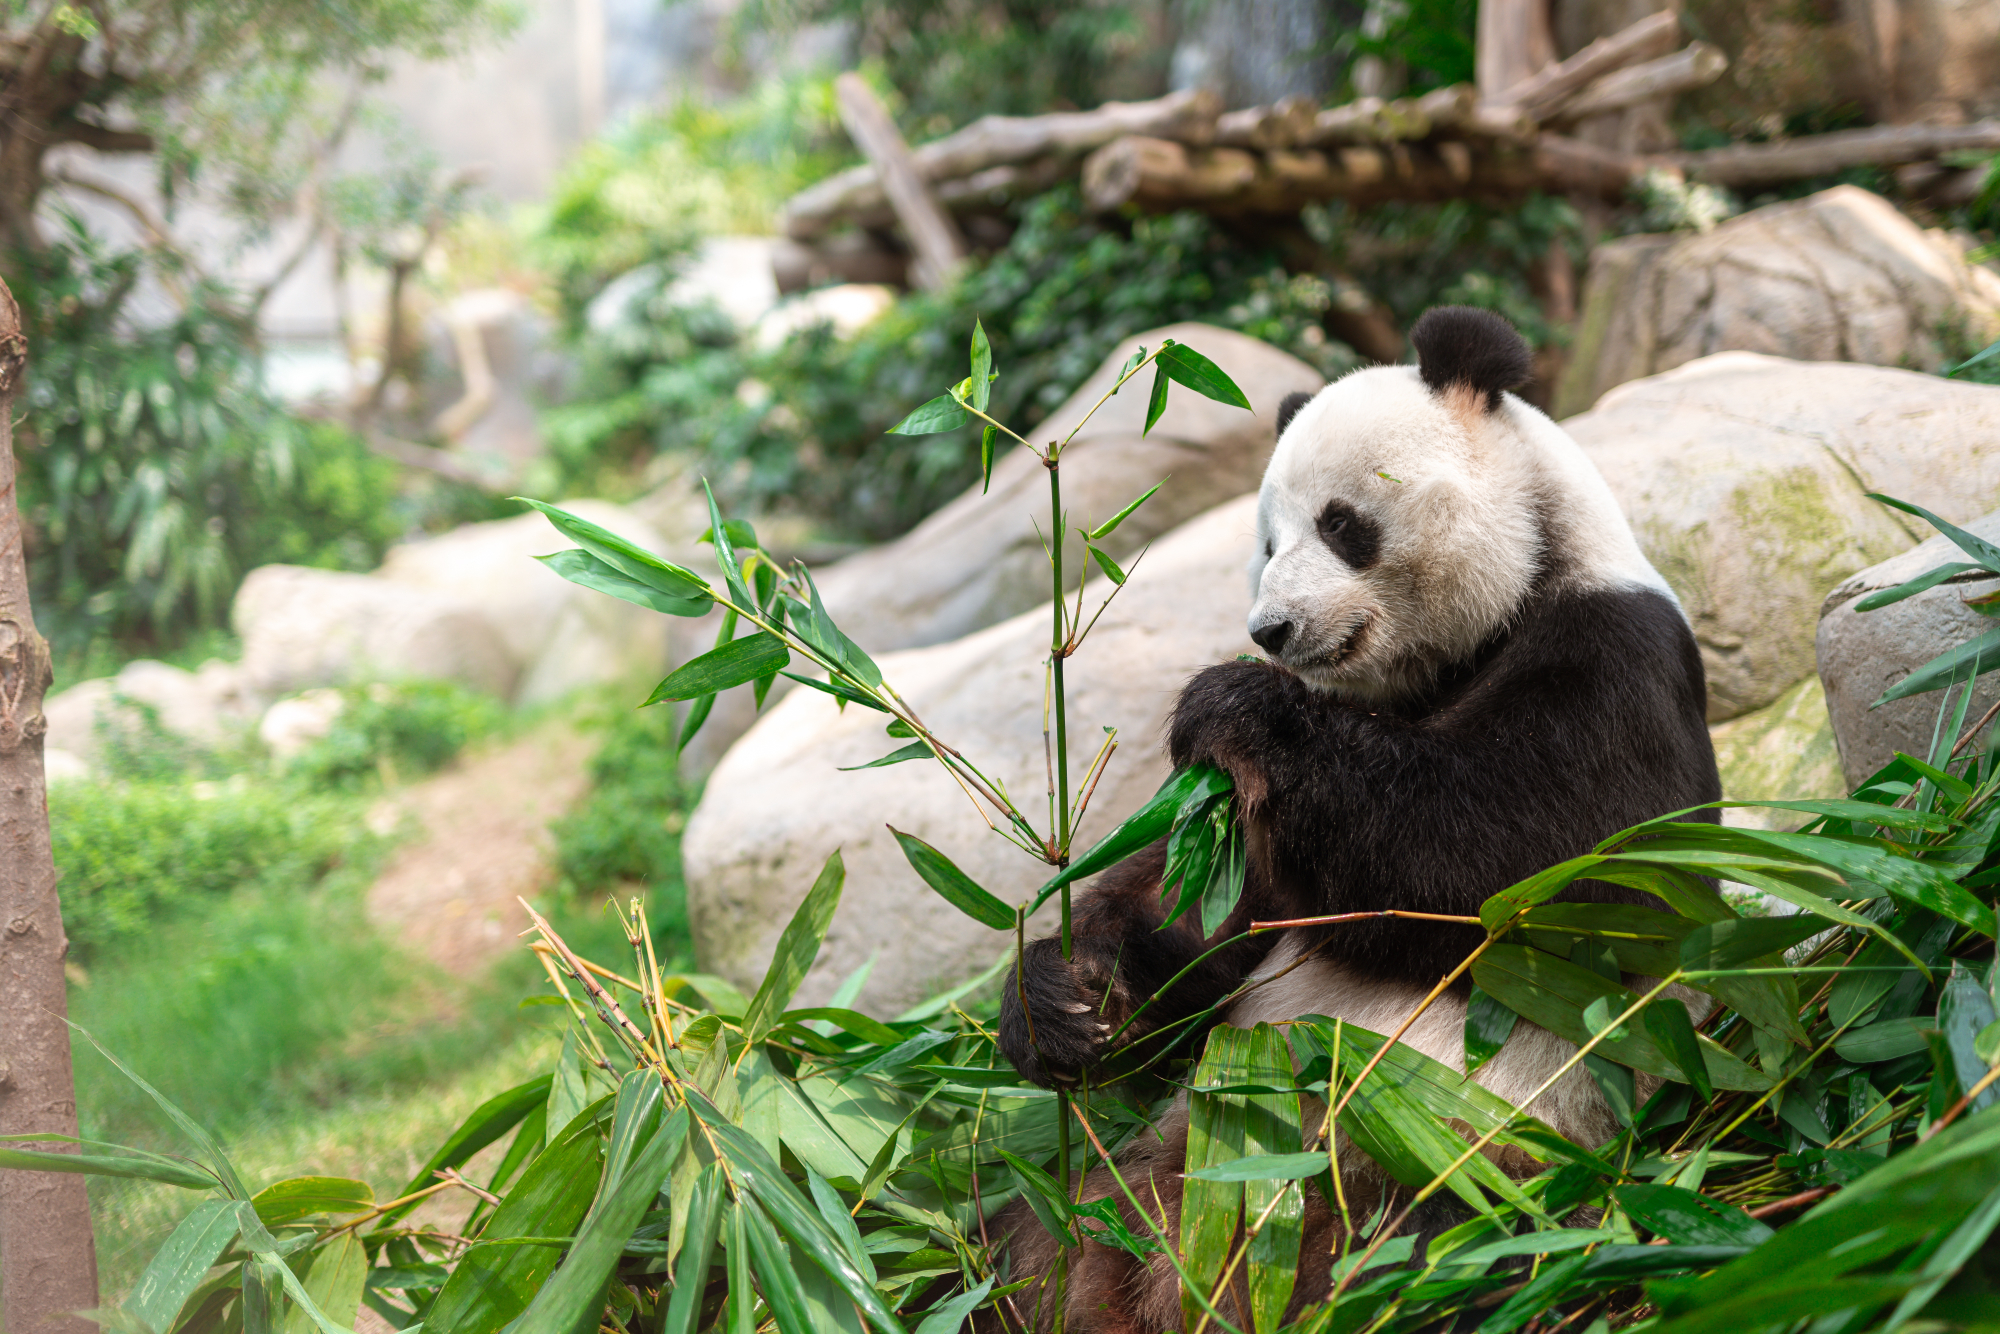 http://media.oceanpark.com.hk/files/s3fs-public/giant-panda-discovery-banner_0.jpg